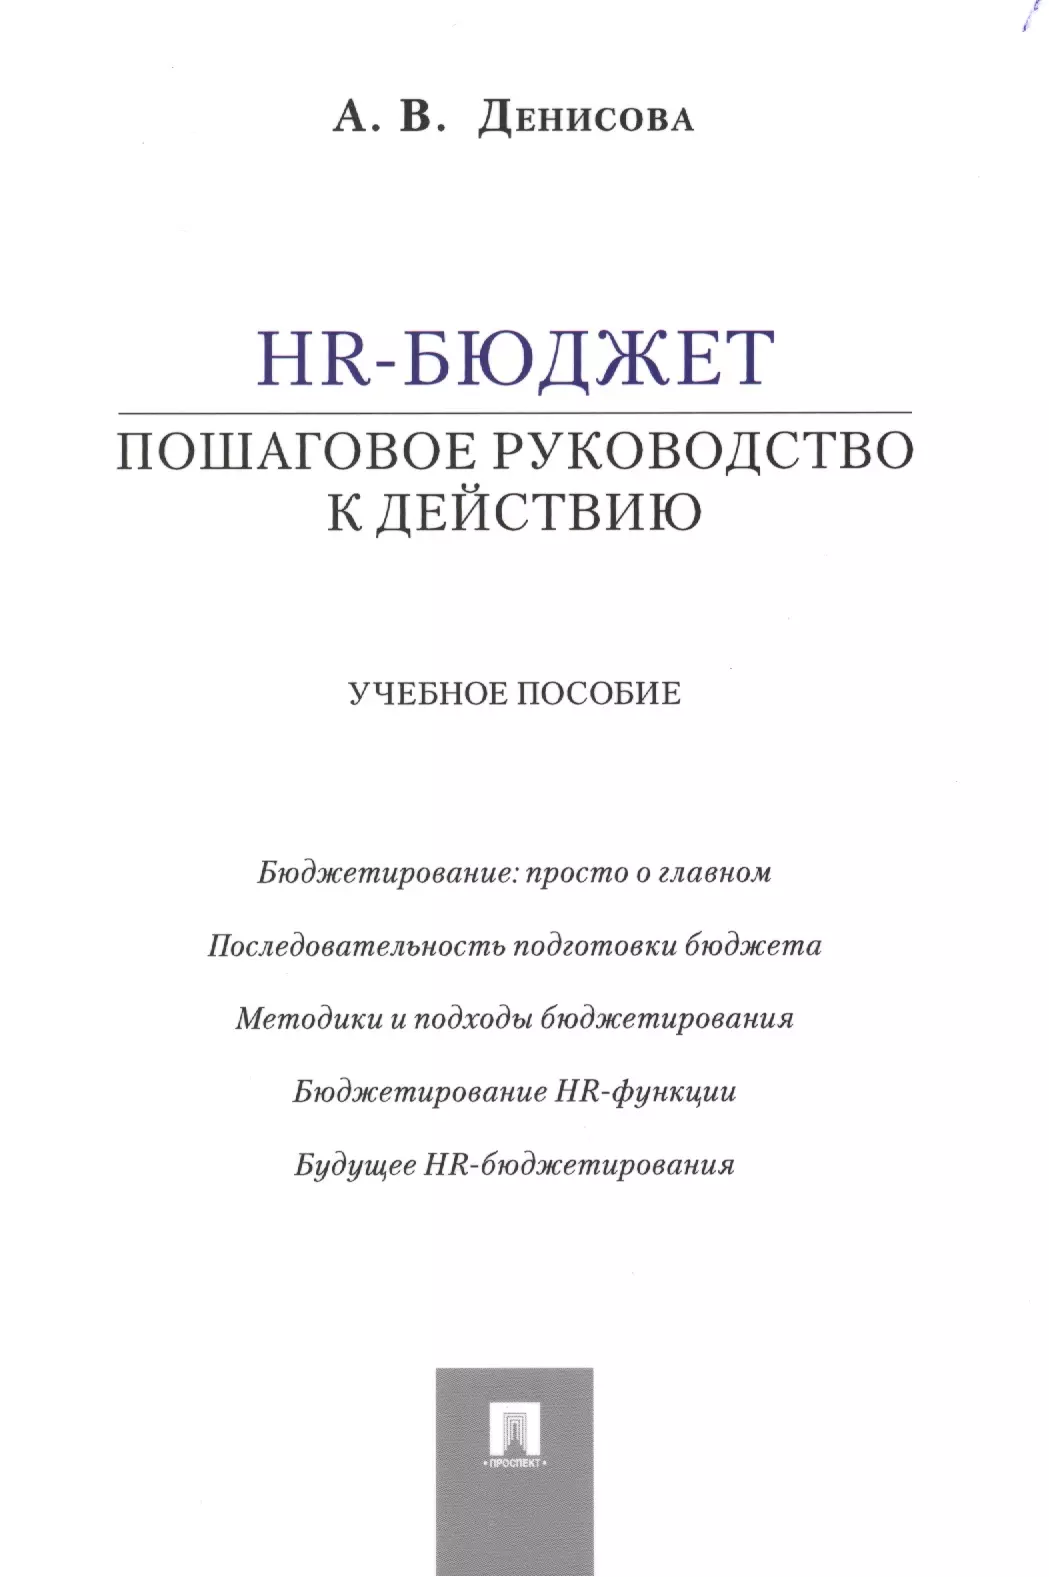 Денисова Ариадна Викторовна - HR-бюджет: пошаговое руководство к действию: учебное пособие